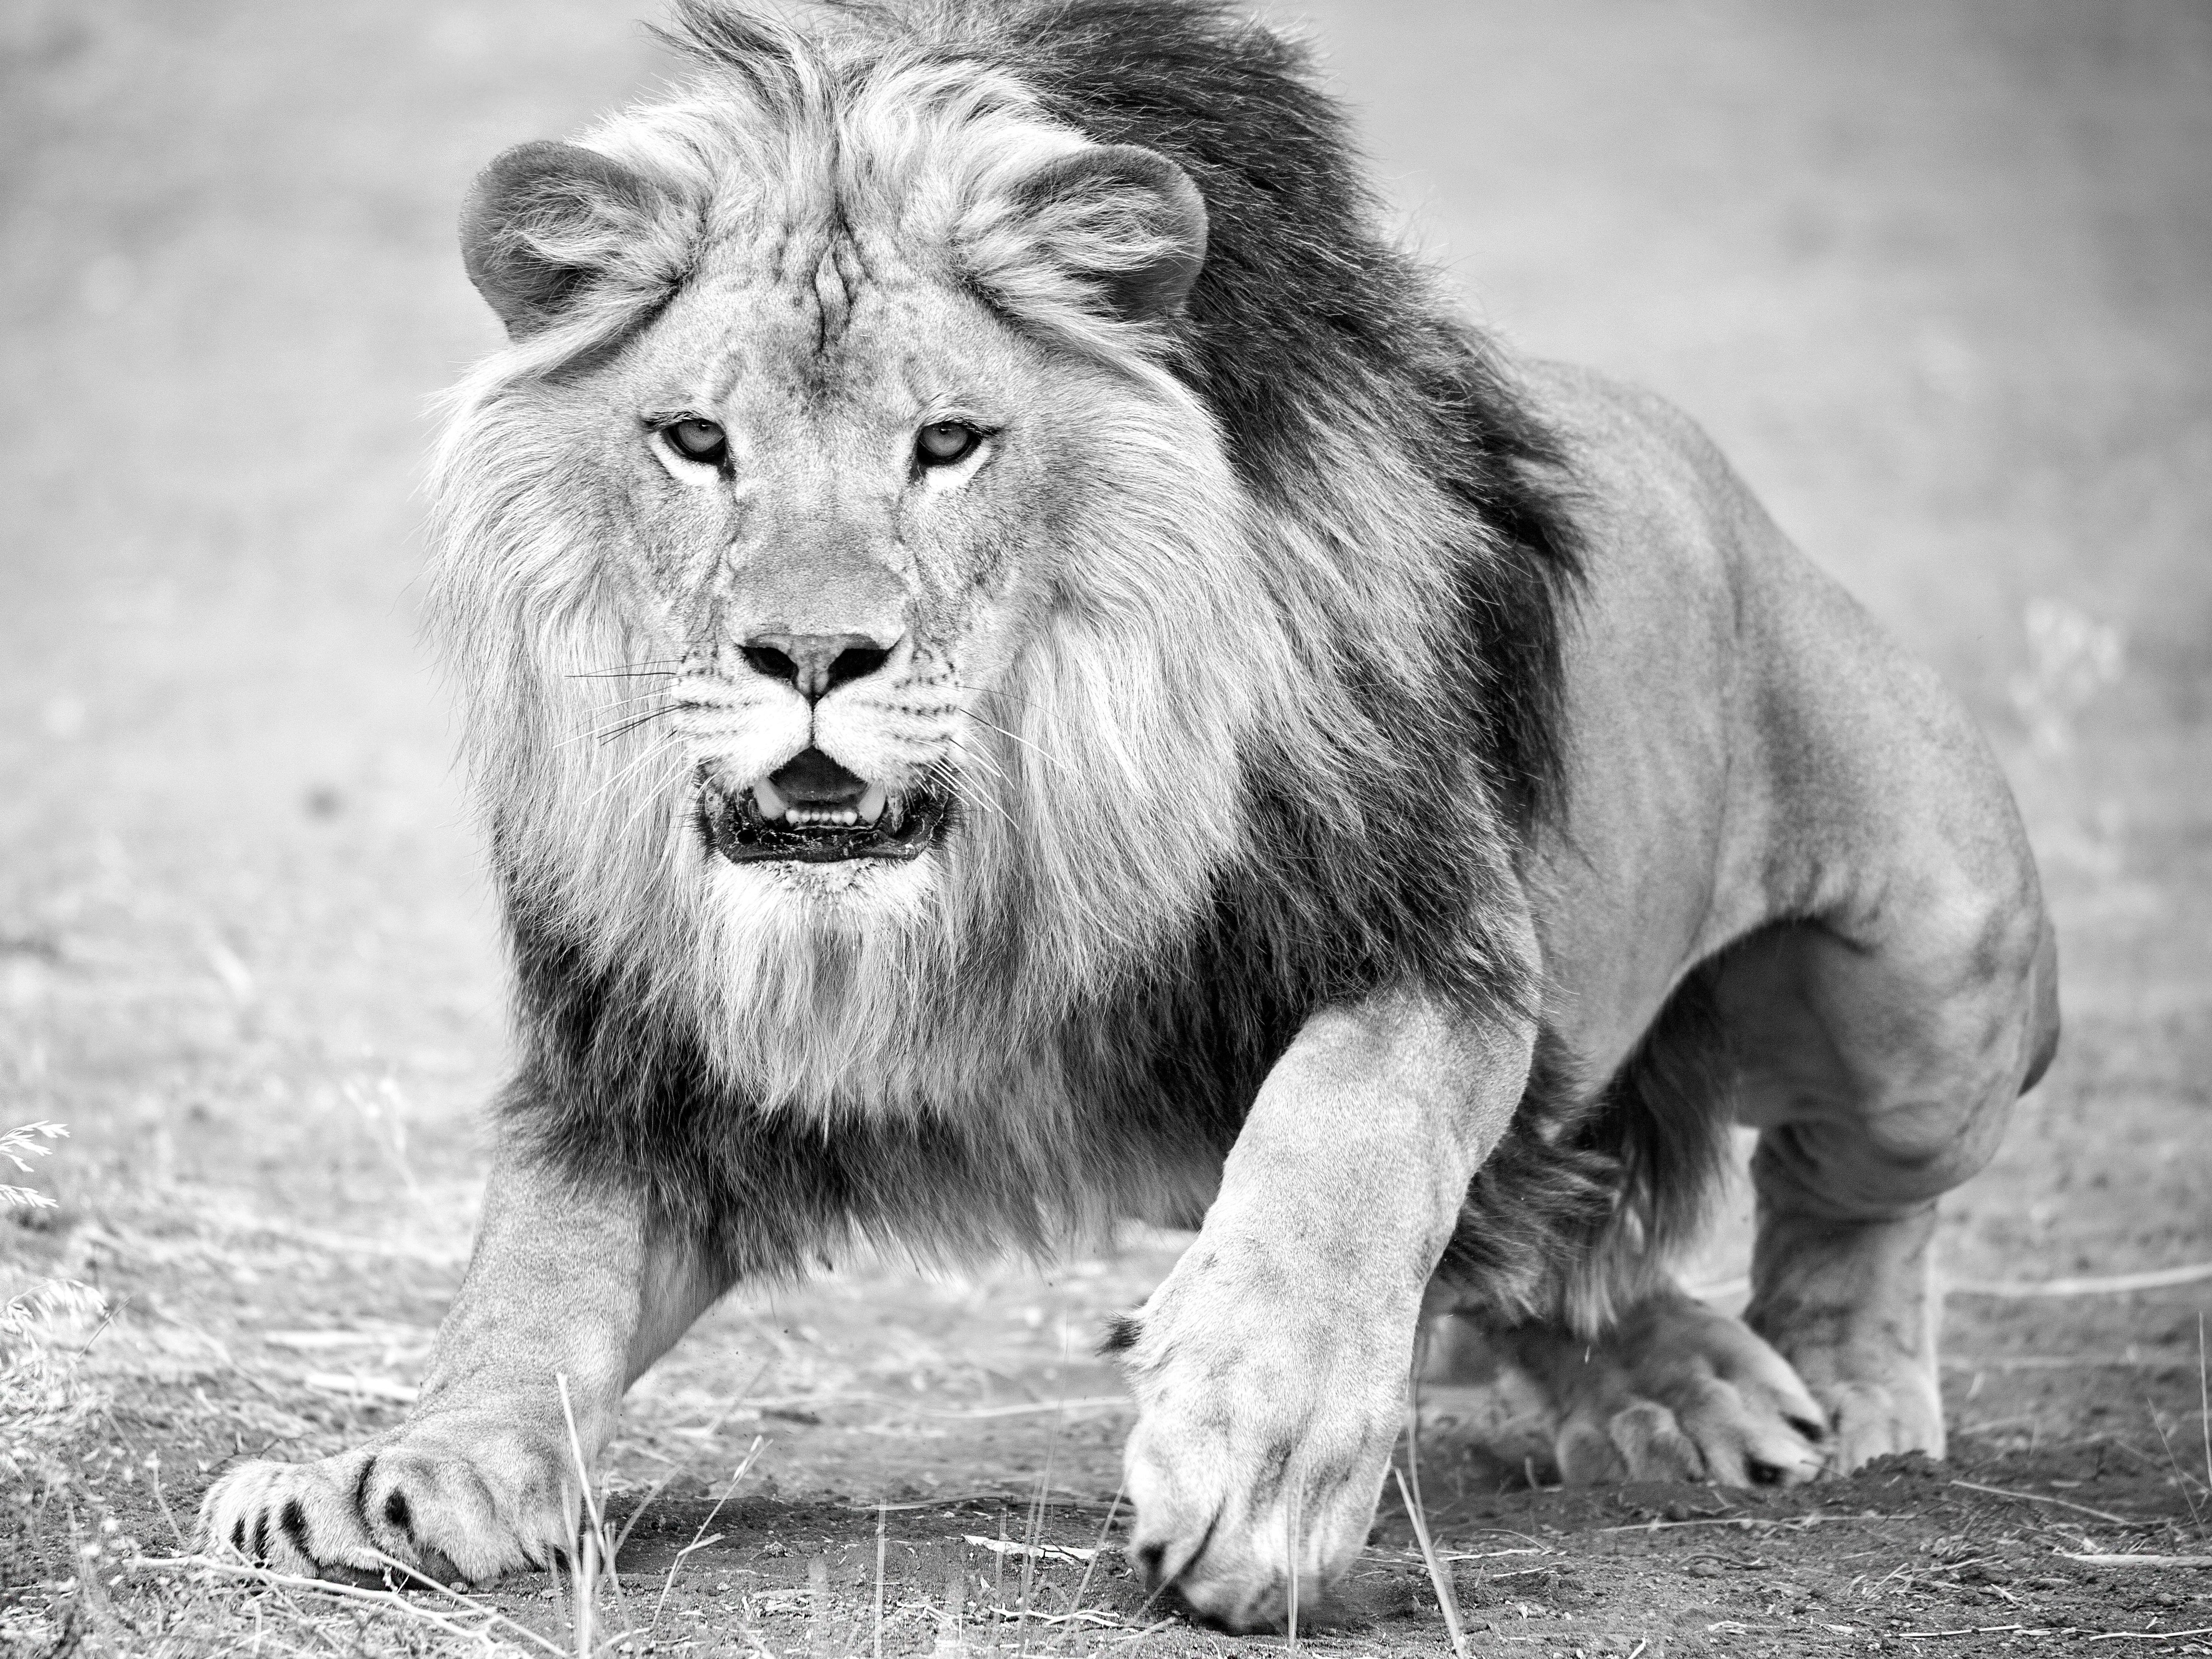 Animal Print Shane Russeck - "The Charge" 28x40 - Photographie en noir et blanc, Photographie de Lion, Tirage non signé